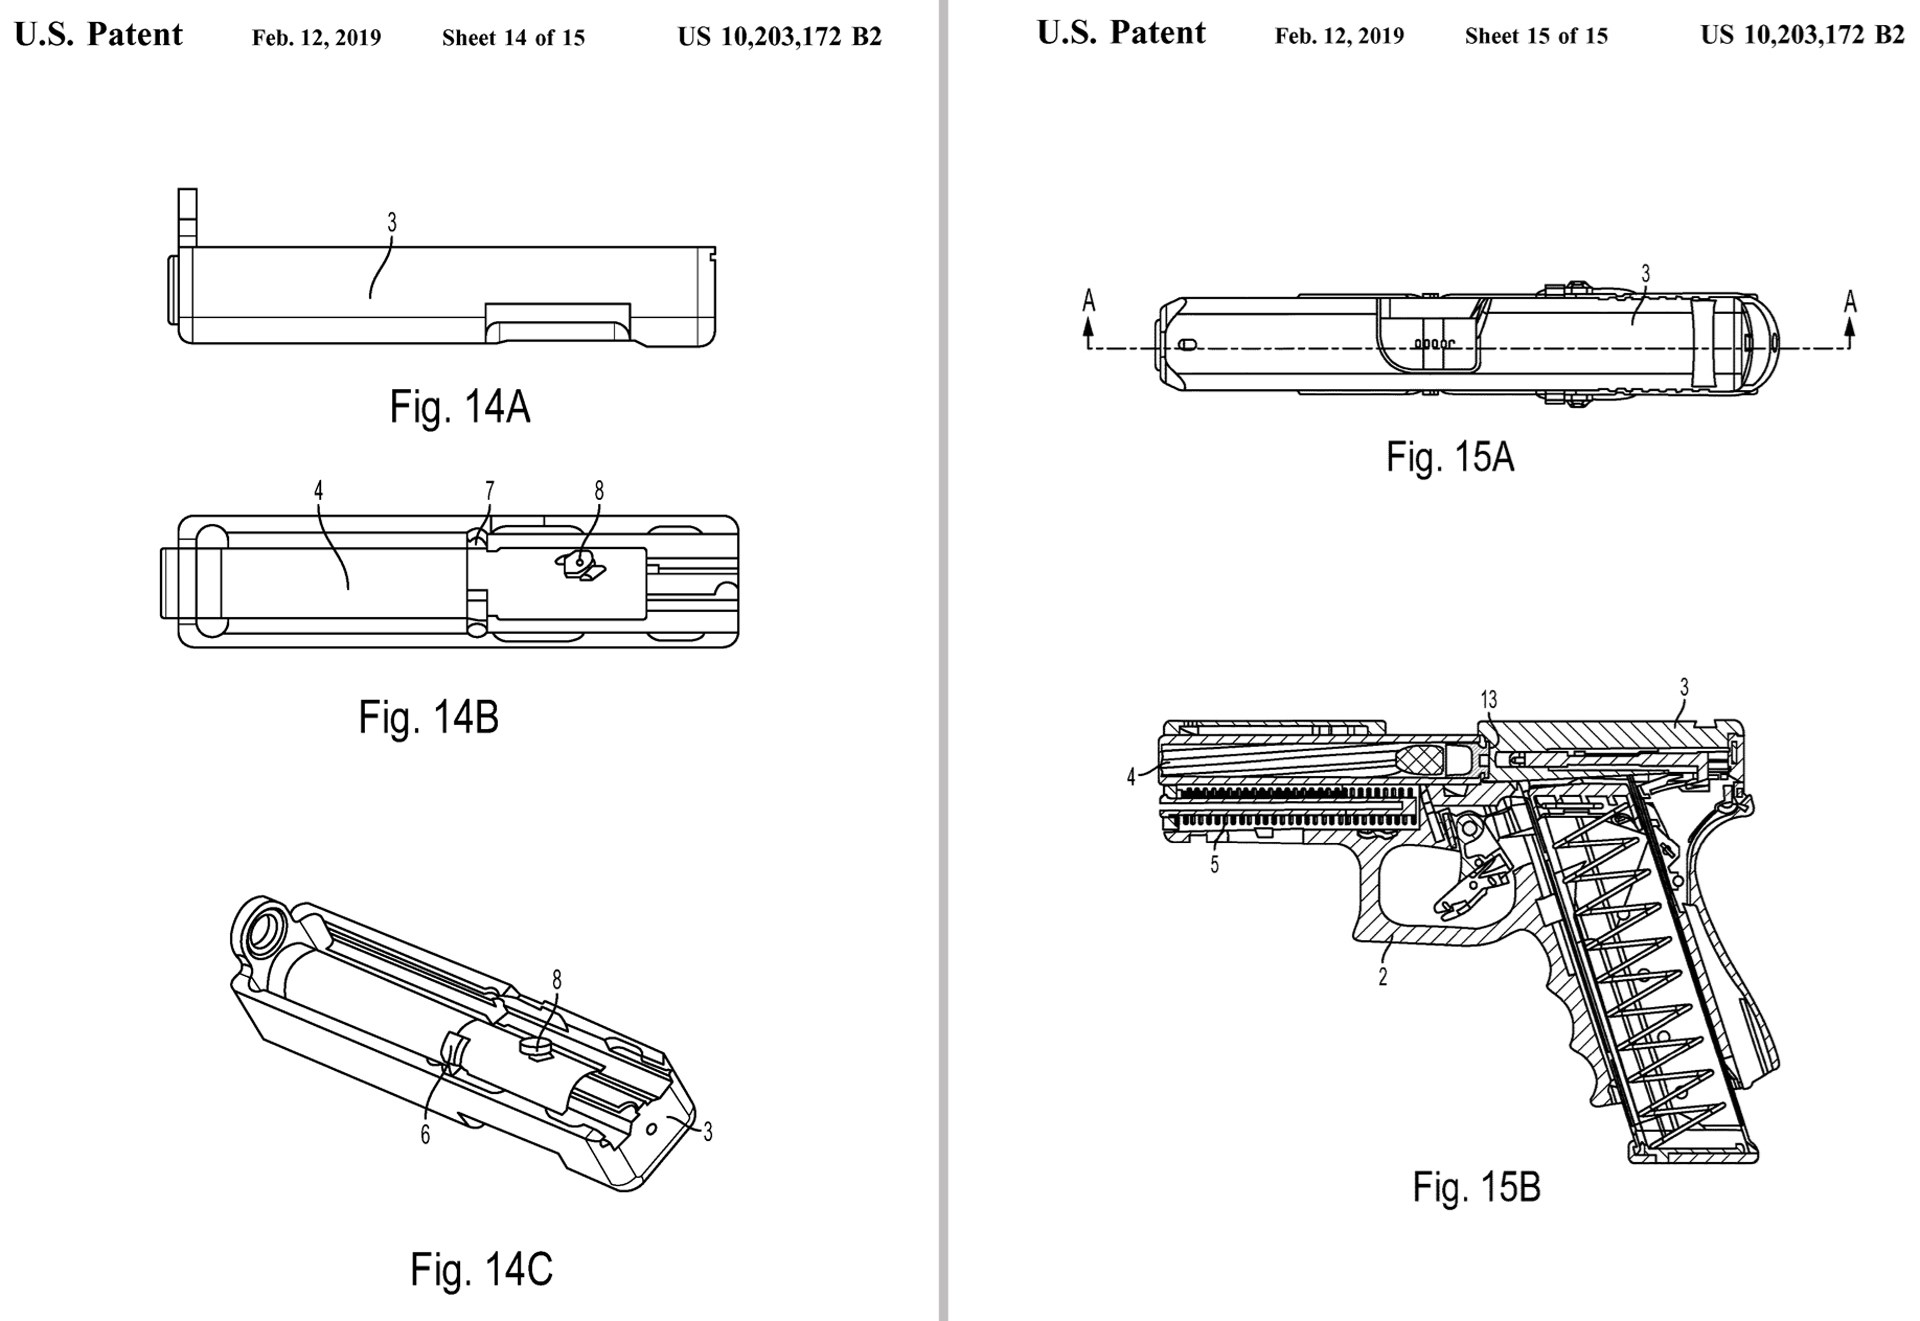 Patent drawings for rotating barrel glock g46 prototype gun pistol handgun